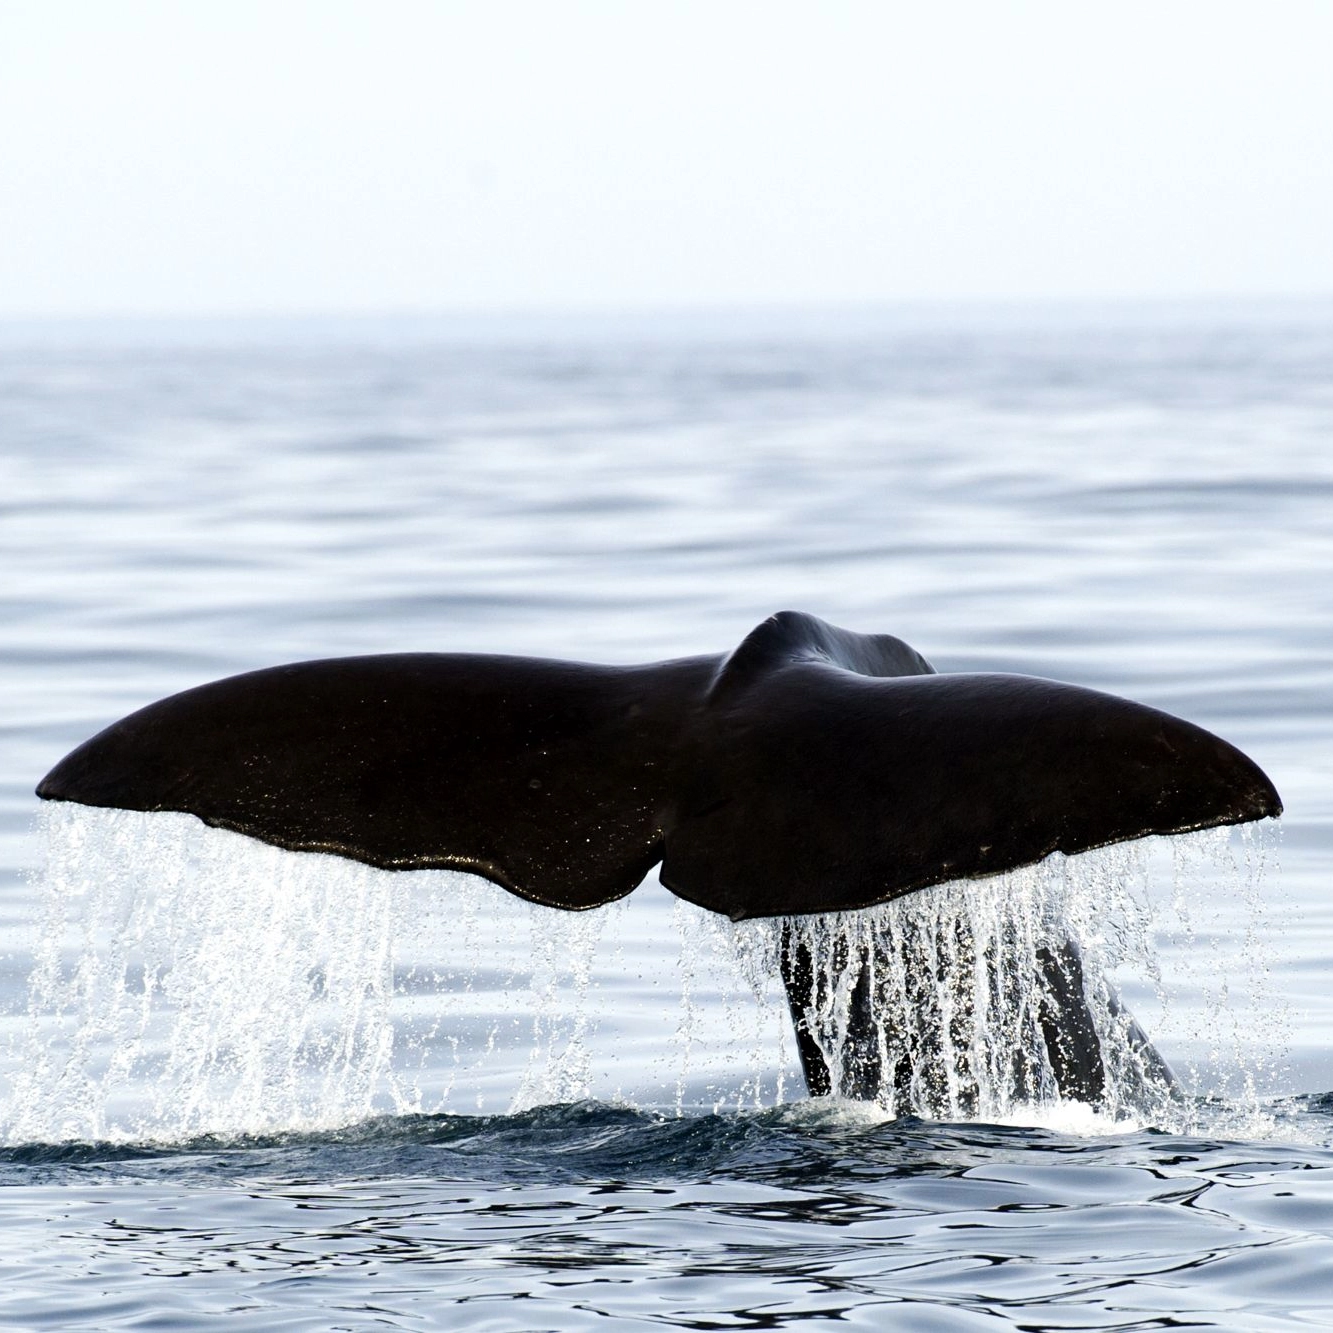 Whale - Wild life safari, Norway